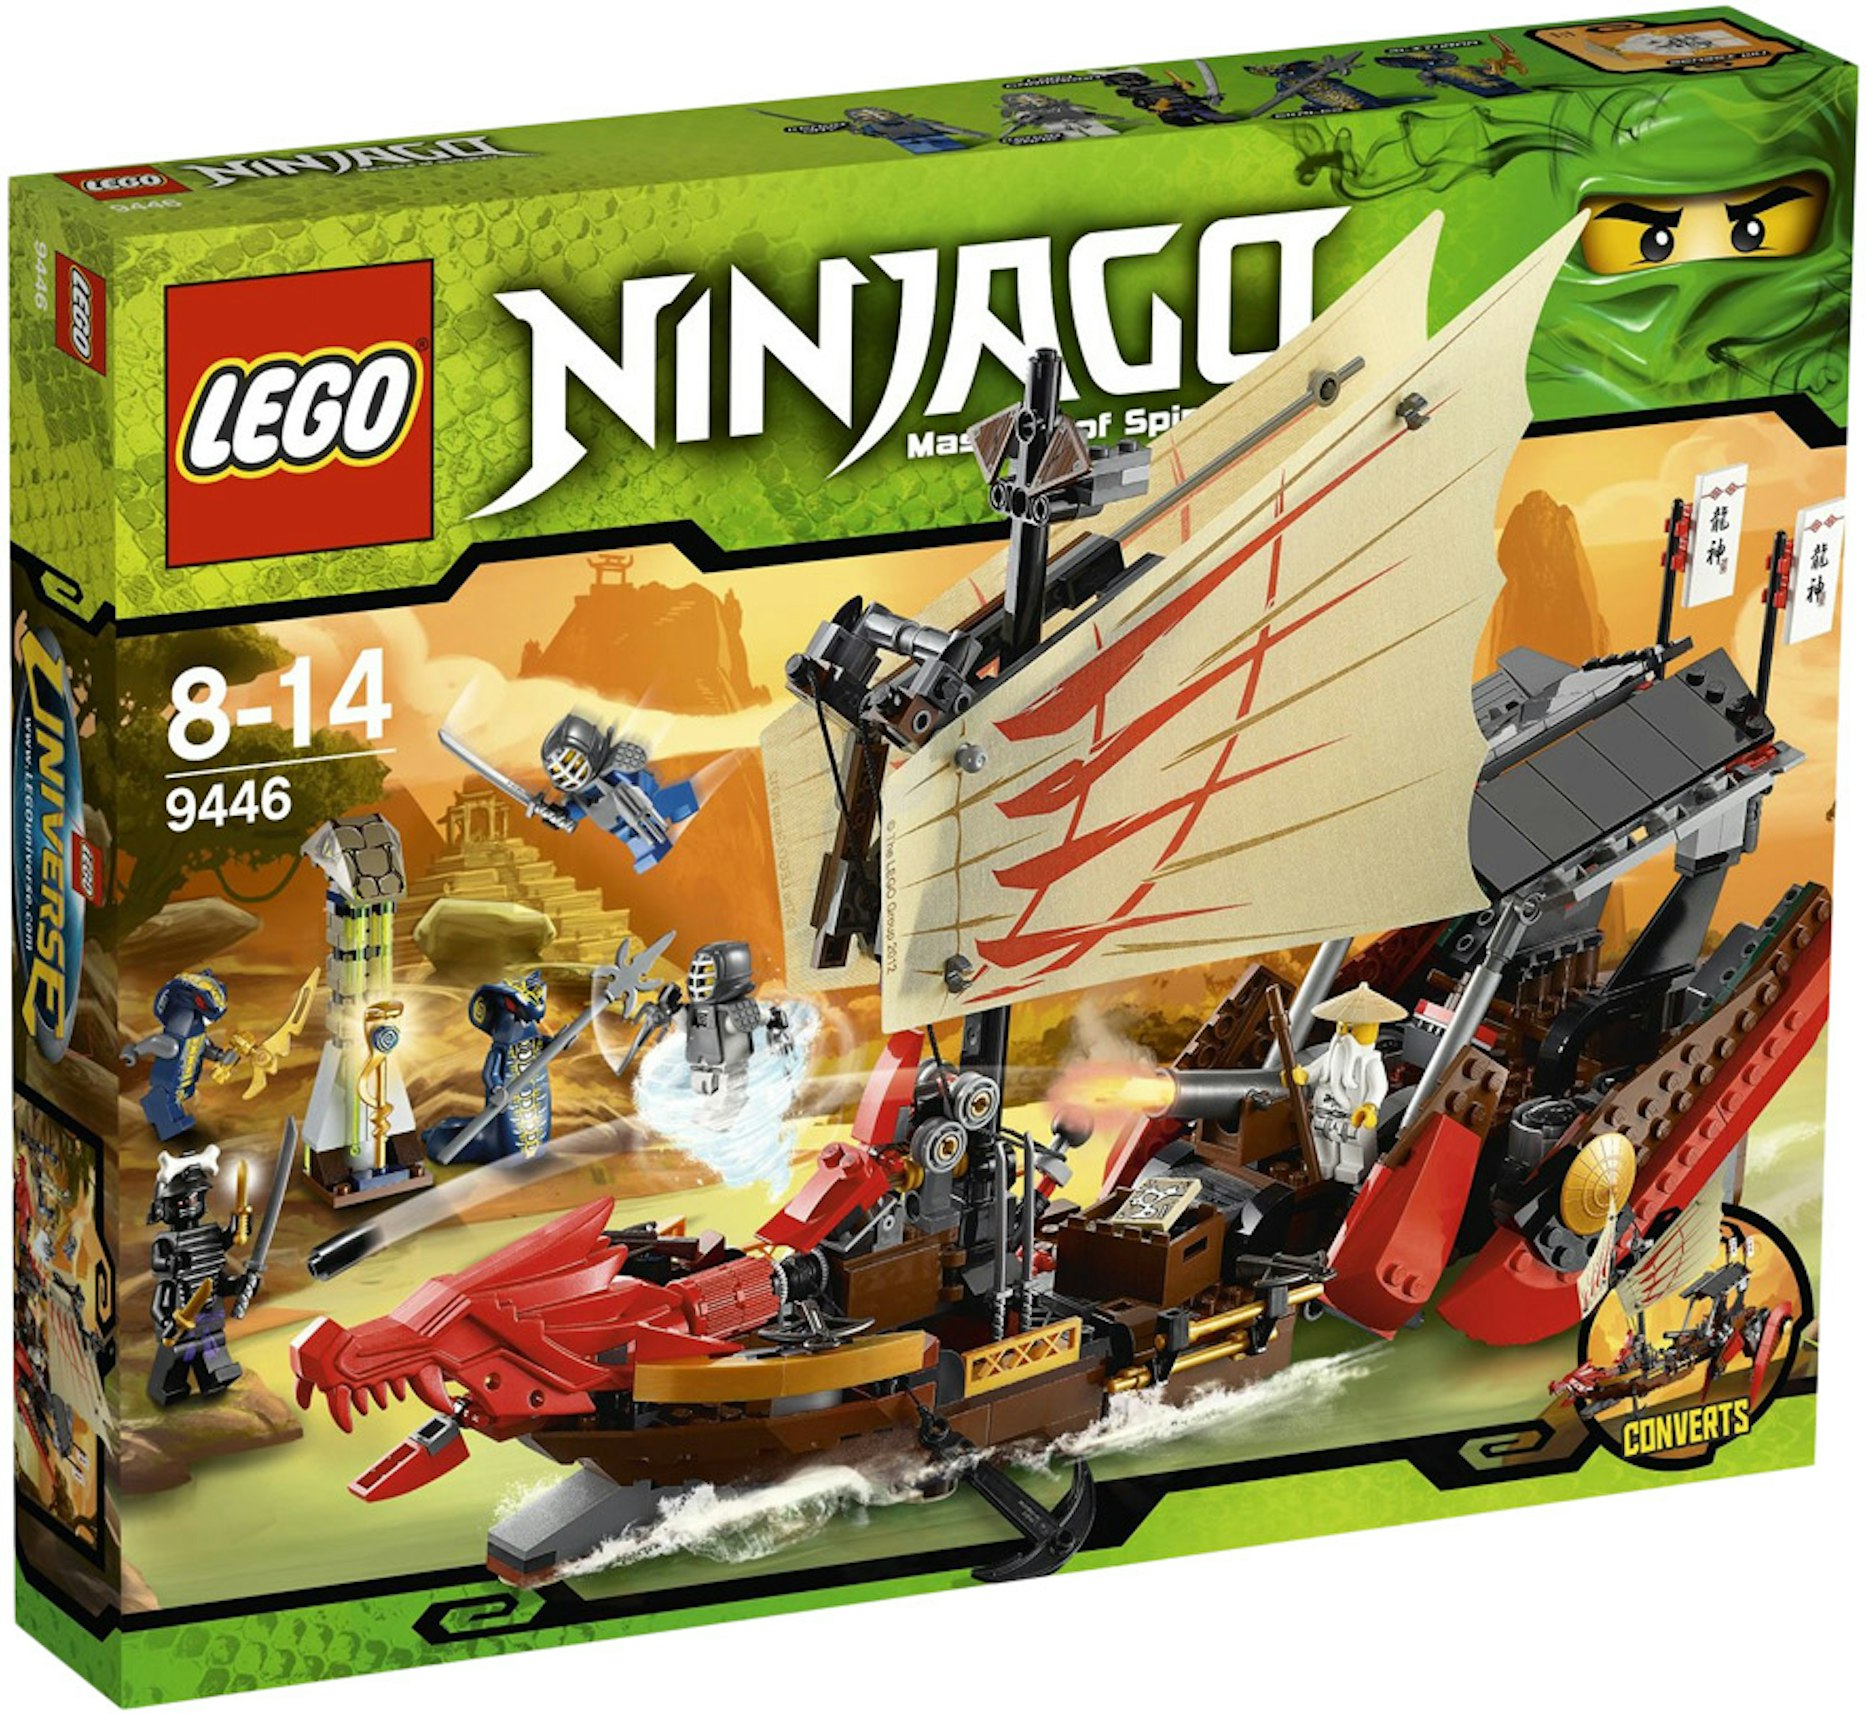 LEGO Ninjago Destiny's Bounty Set - US